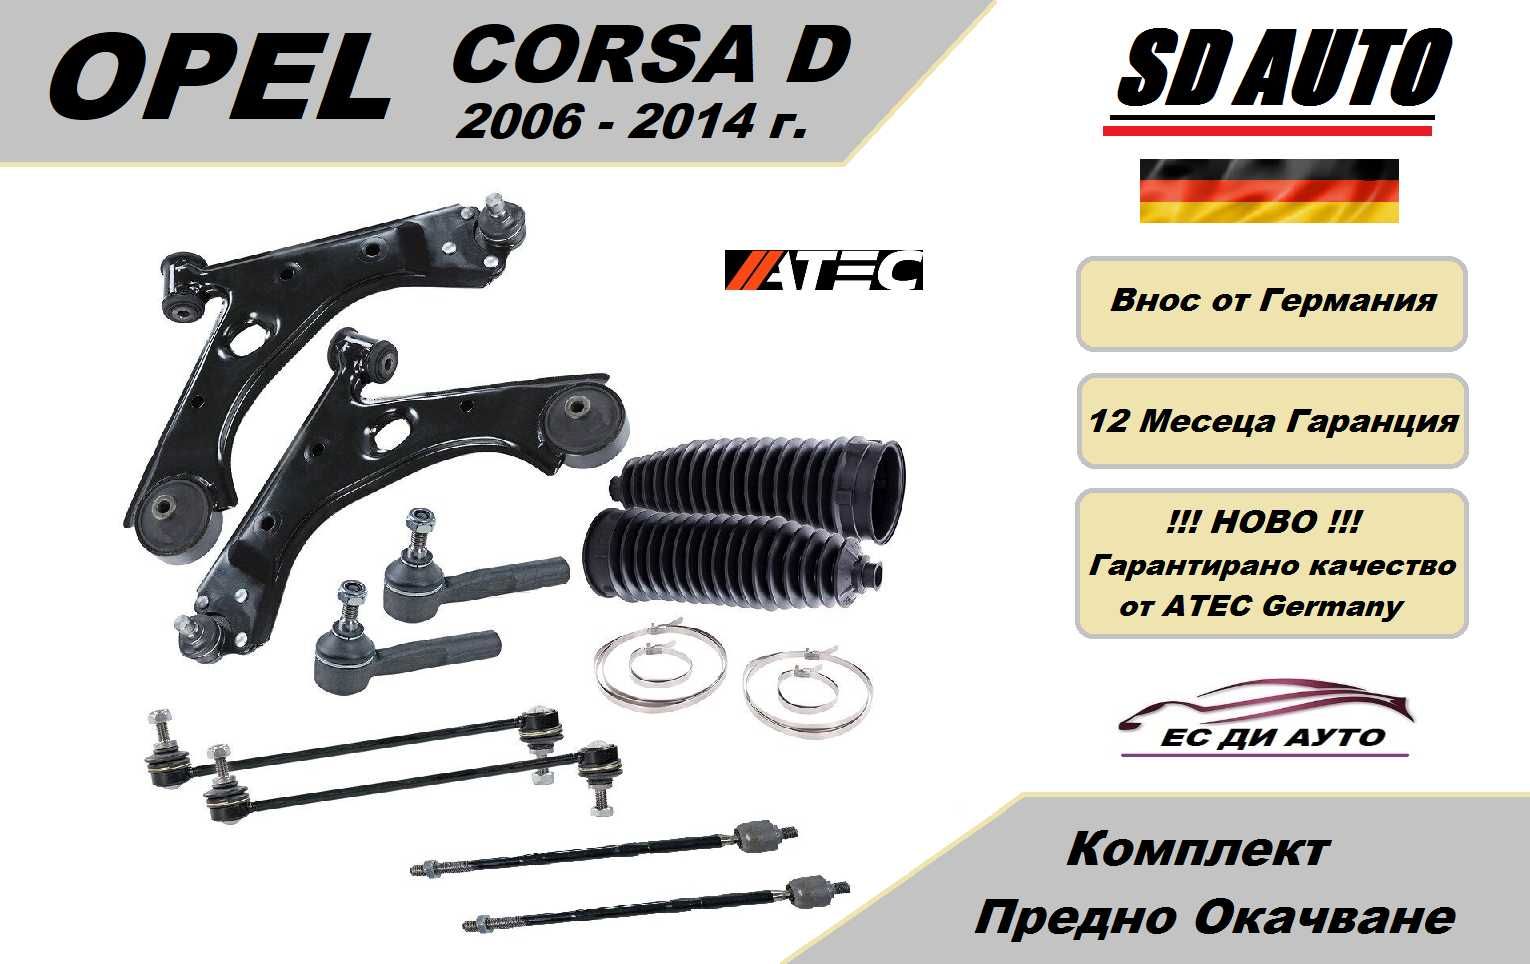 Комплект Предно Окачване за OPEL Corsa D (2006-2014)